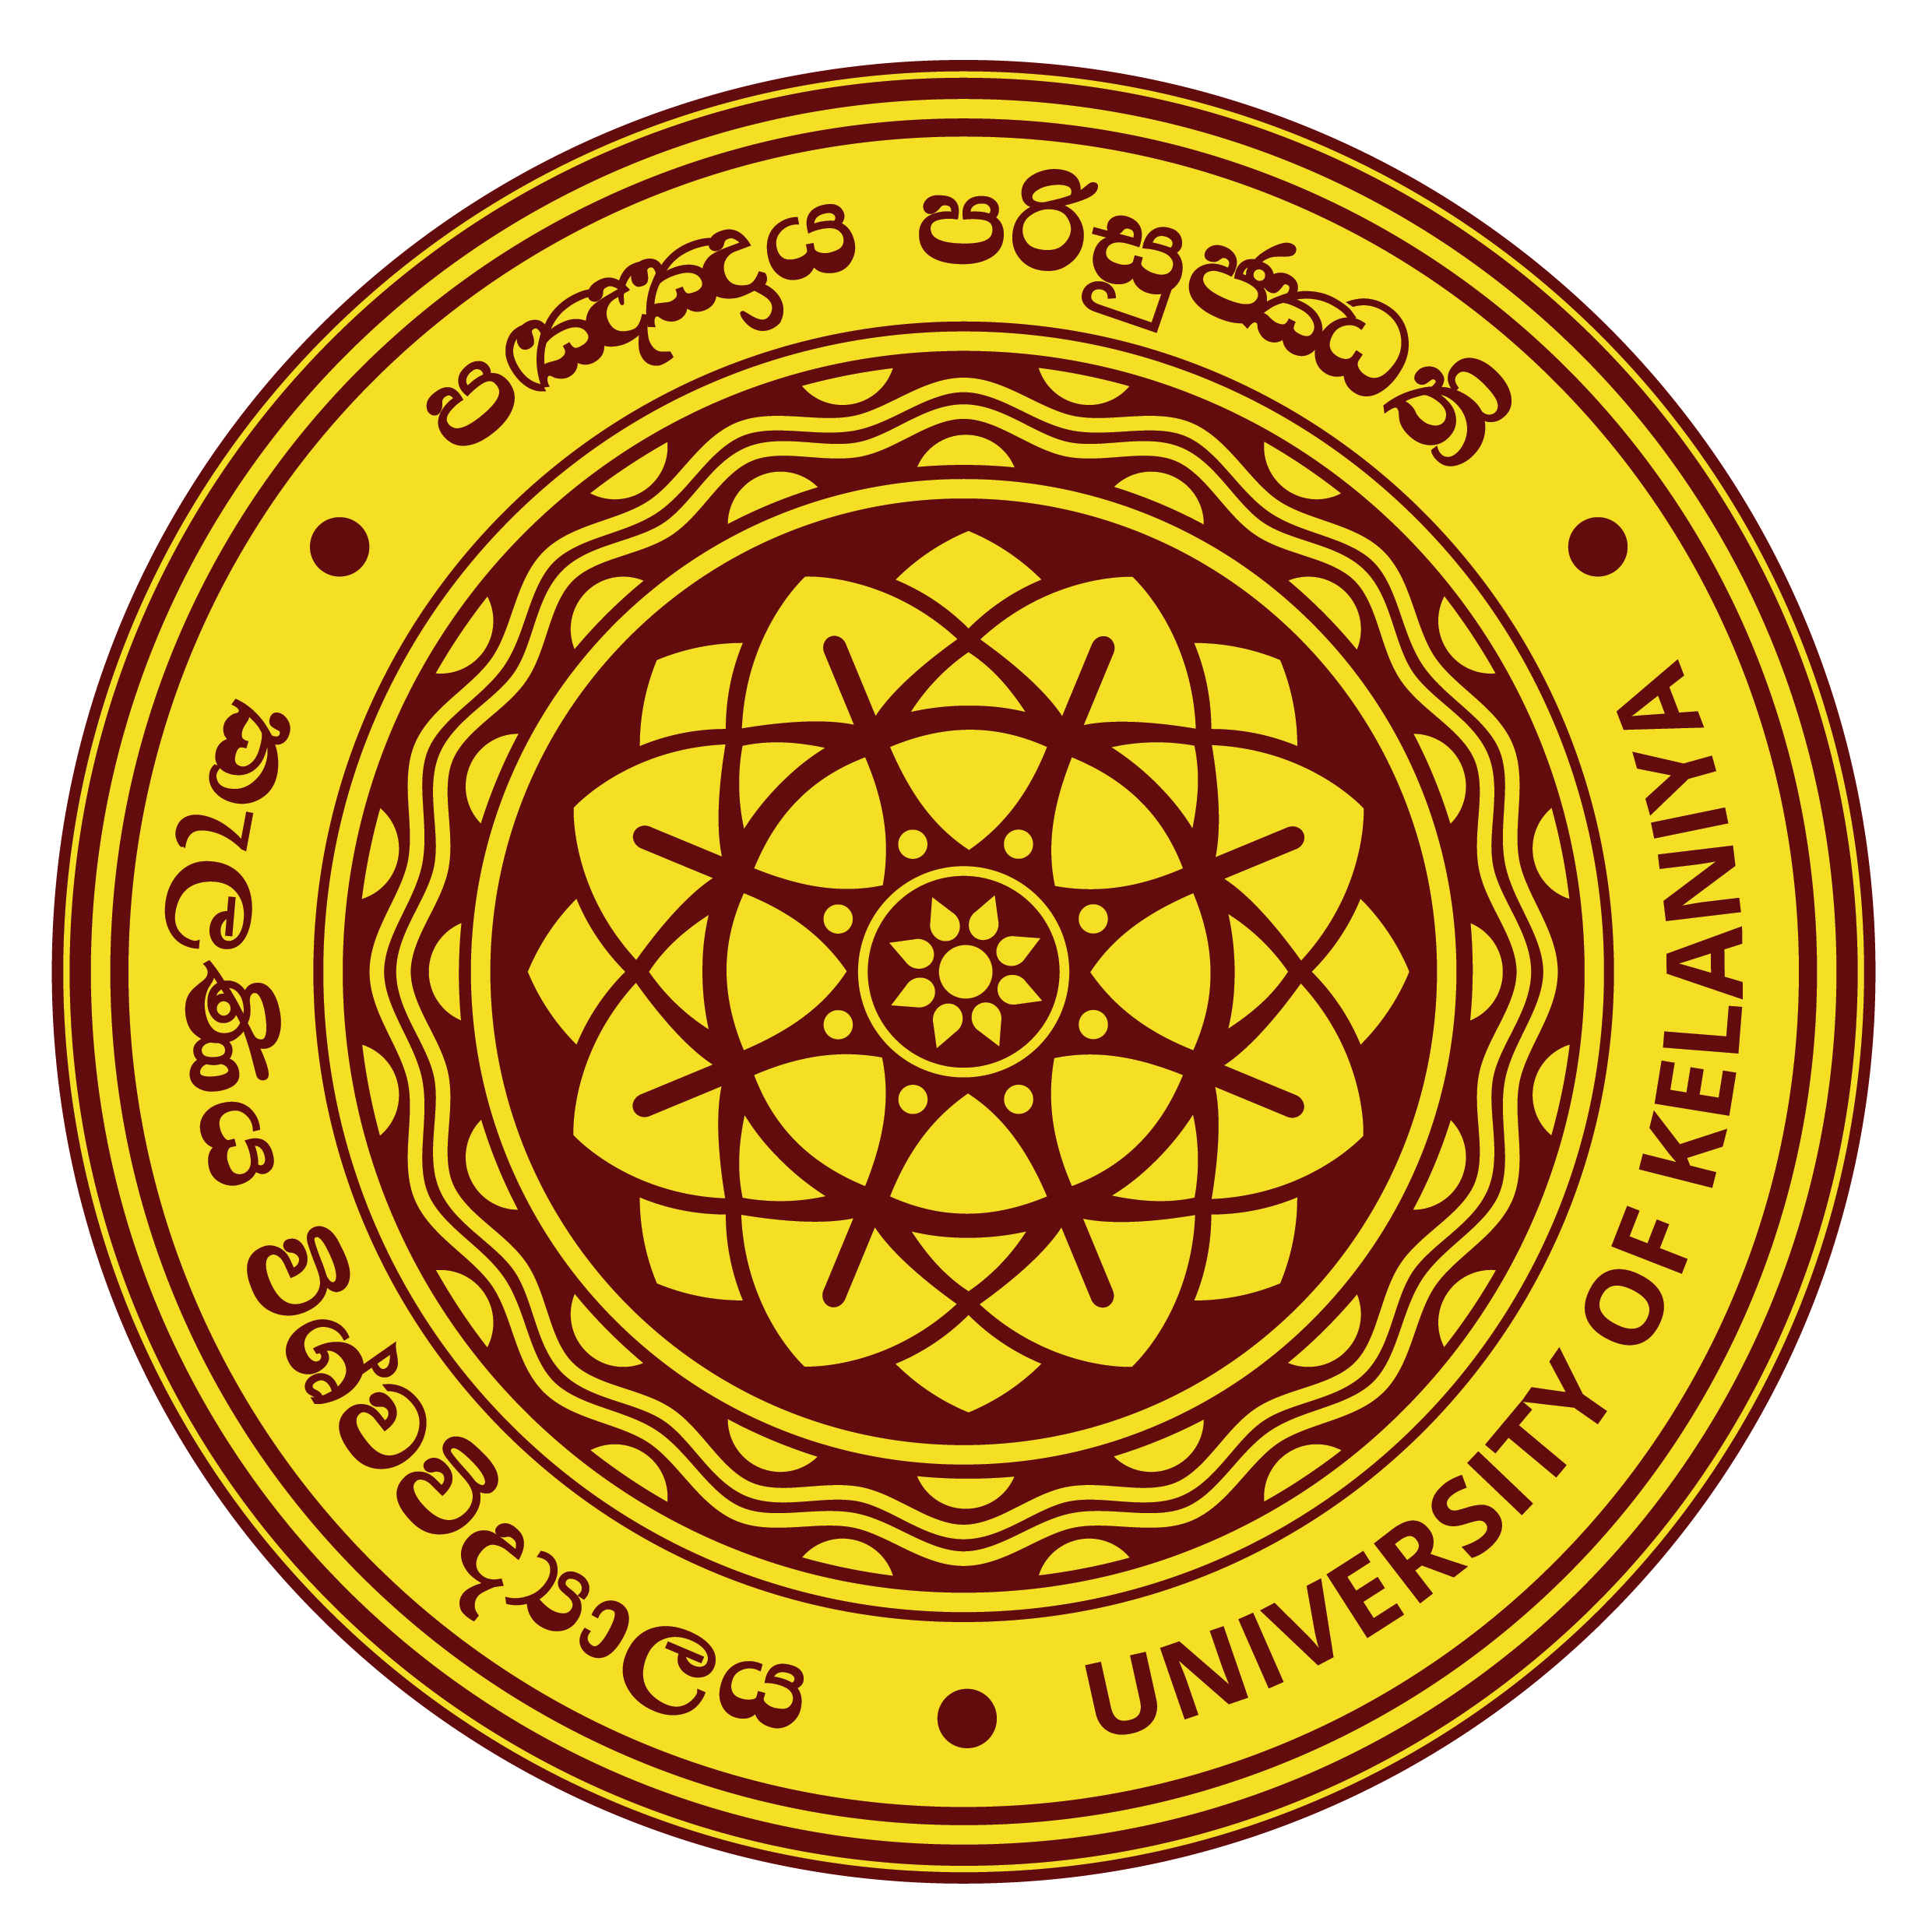 University of kelaniya logo